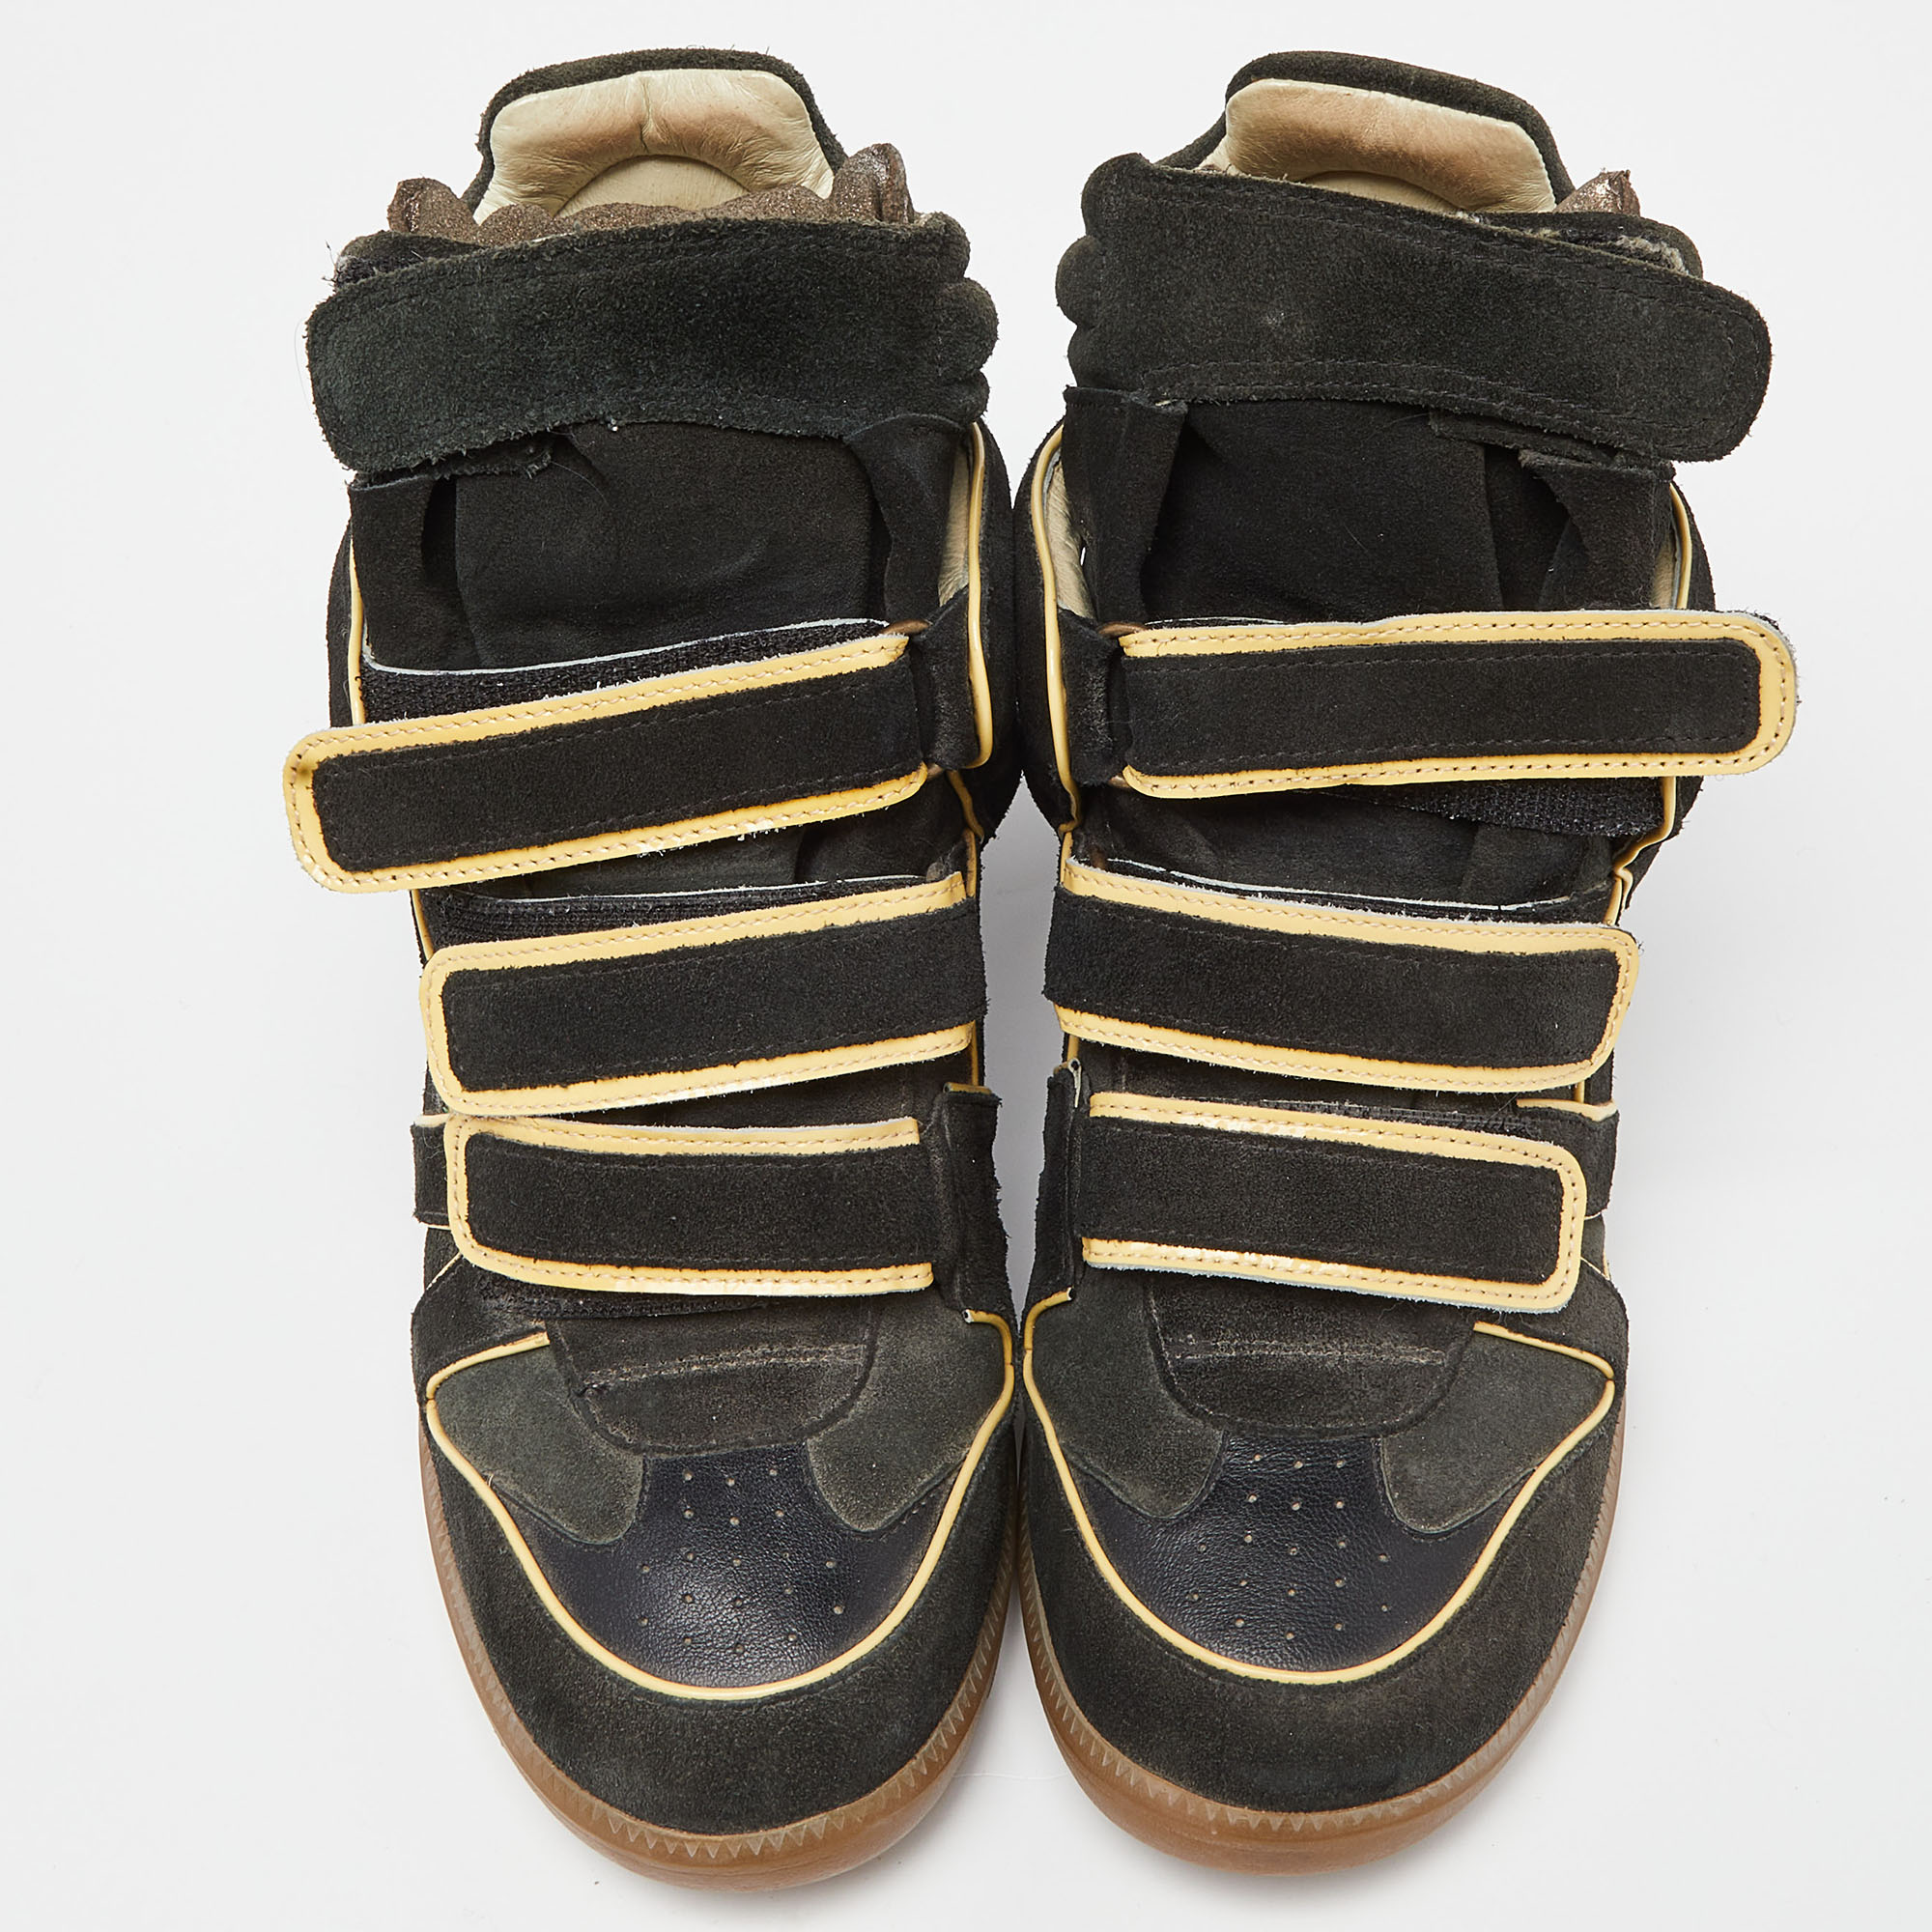 Isabel Marant Black Suede Bekett Sneakers Size 38